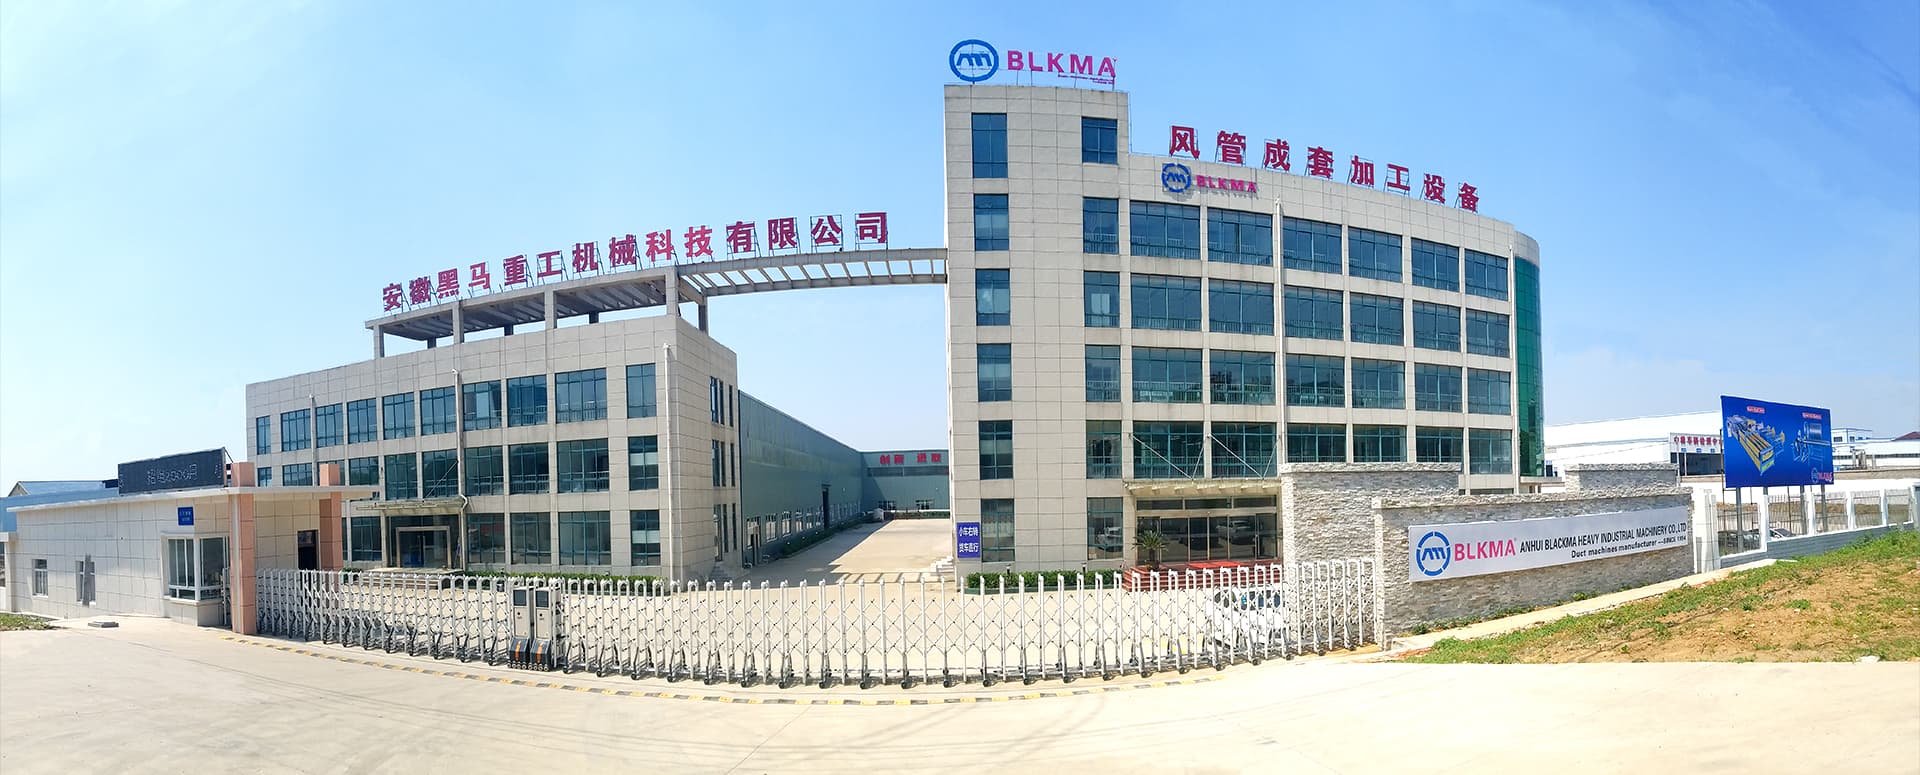 مصنع 360 درجة جولة افتراضية BLKMA